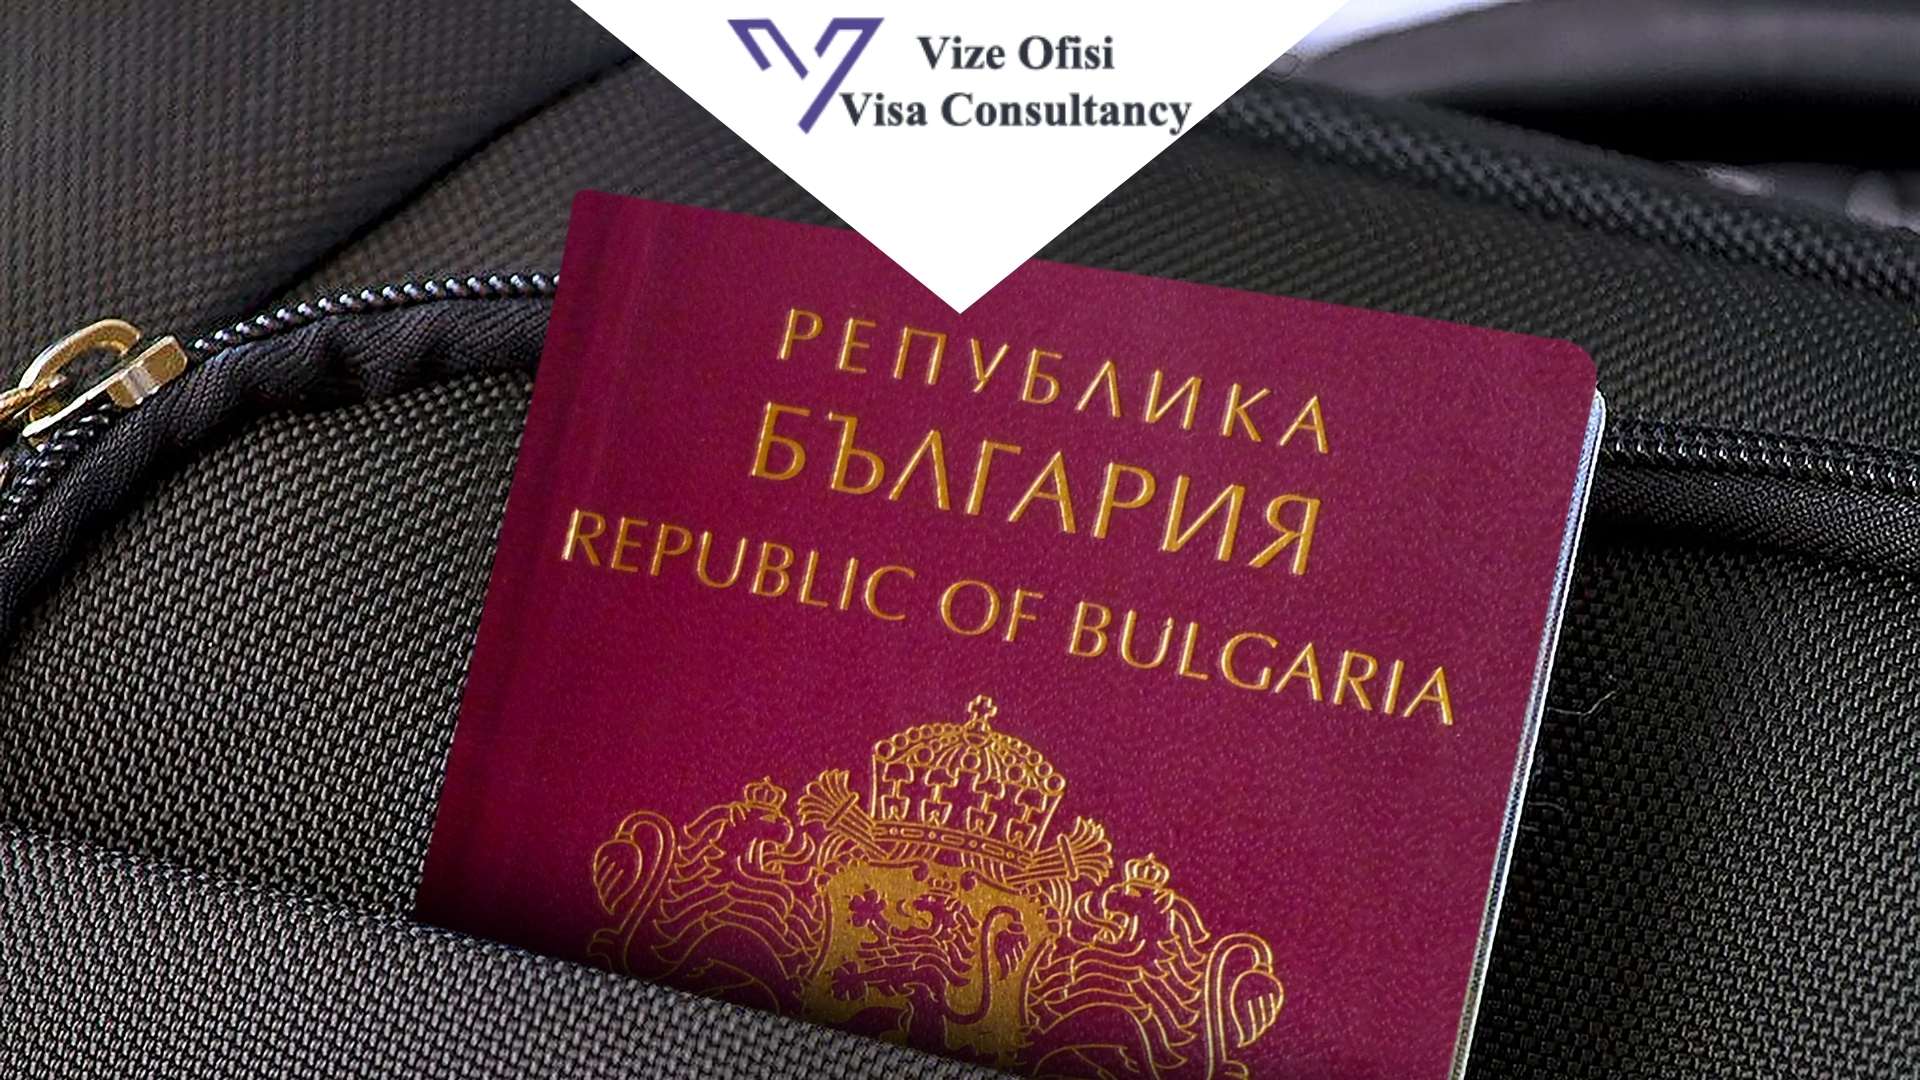 Bulgaristan Pasaport Yenileme 2020 Detayları Nelerdir